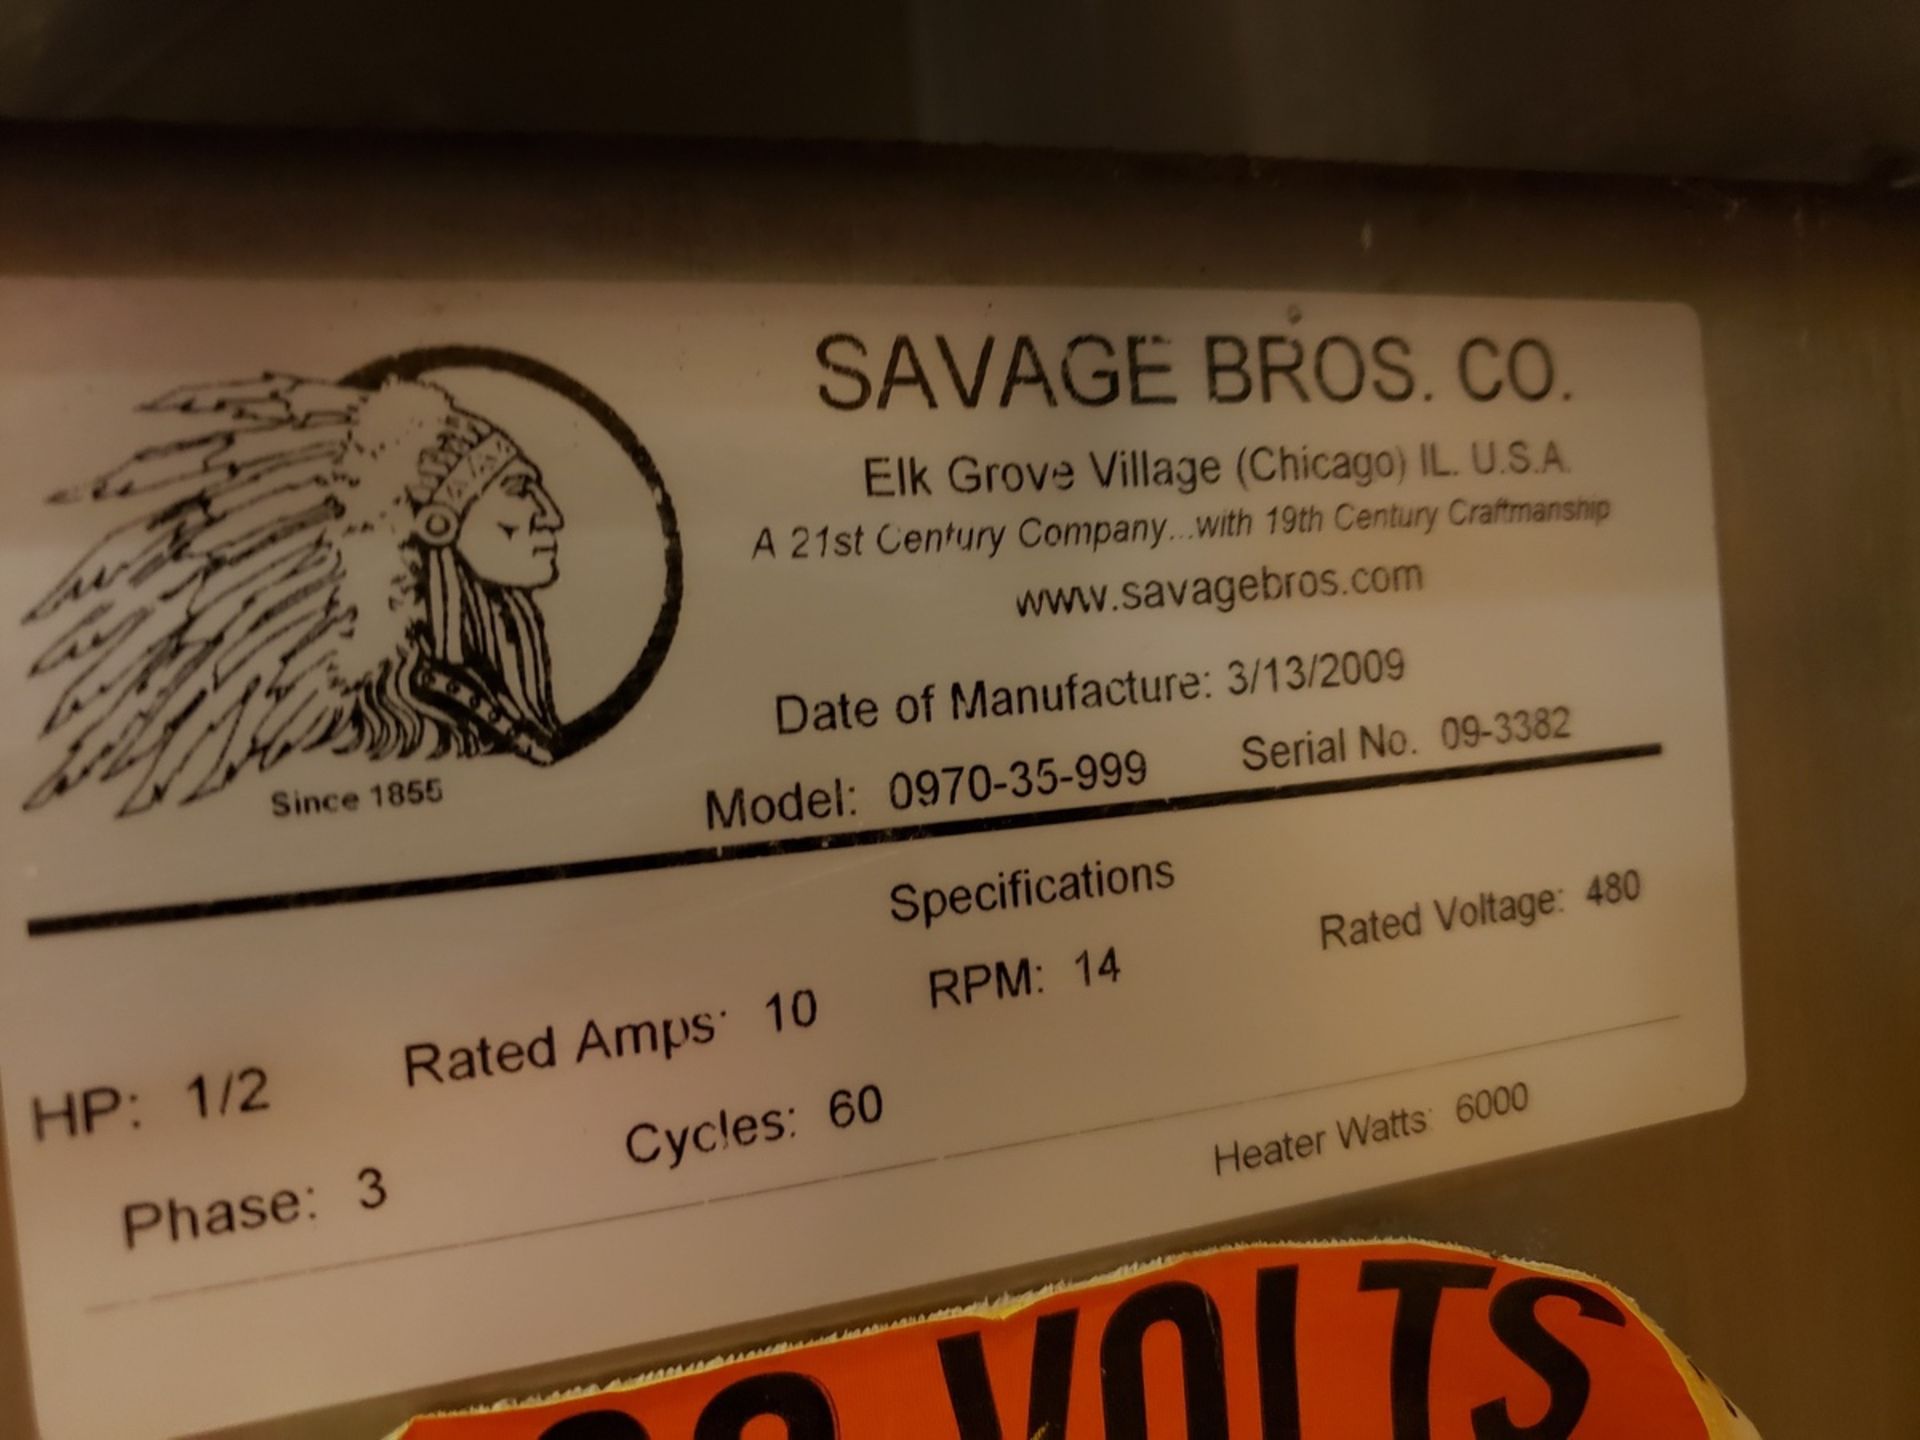 2009 Savage Bros. Chocolate Melter/Blender, M# 0970-35-999, S/N 09-3382 | Rig Fee: $150 - Image 2 of 6